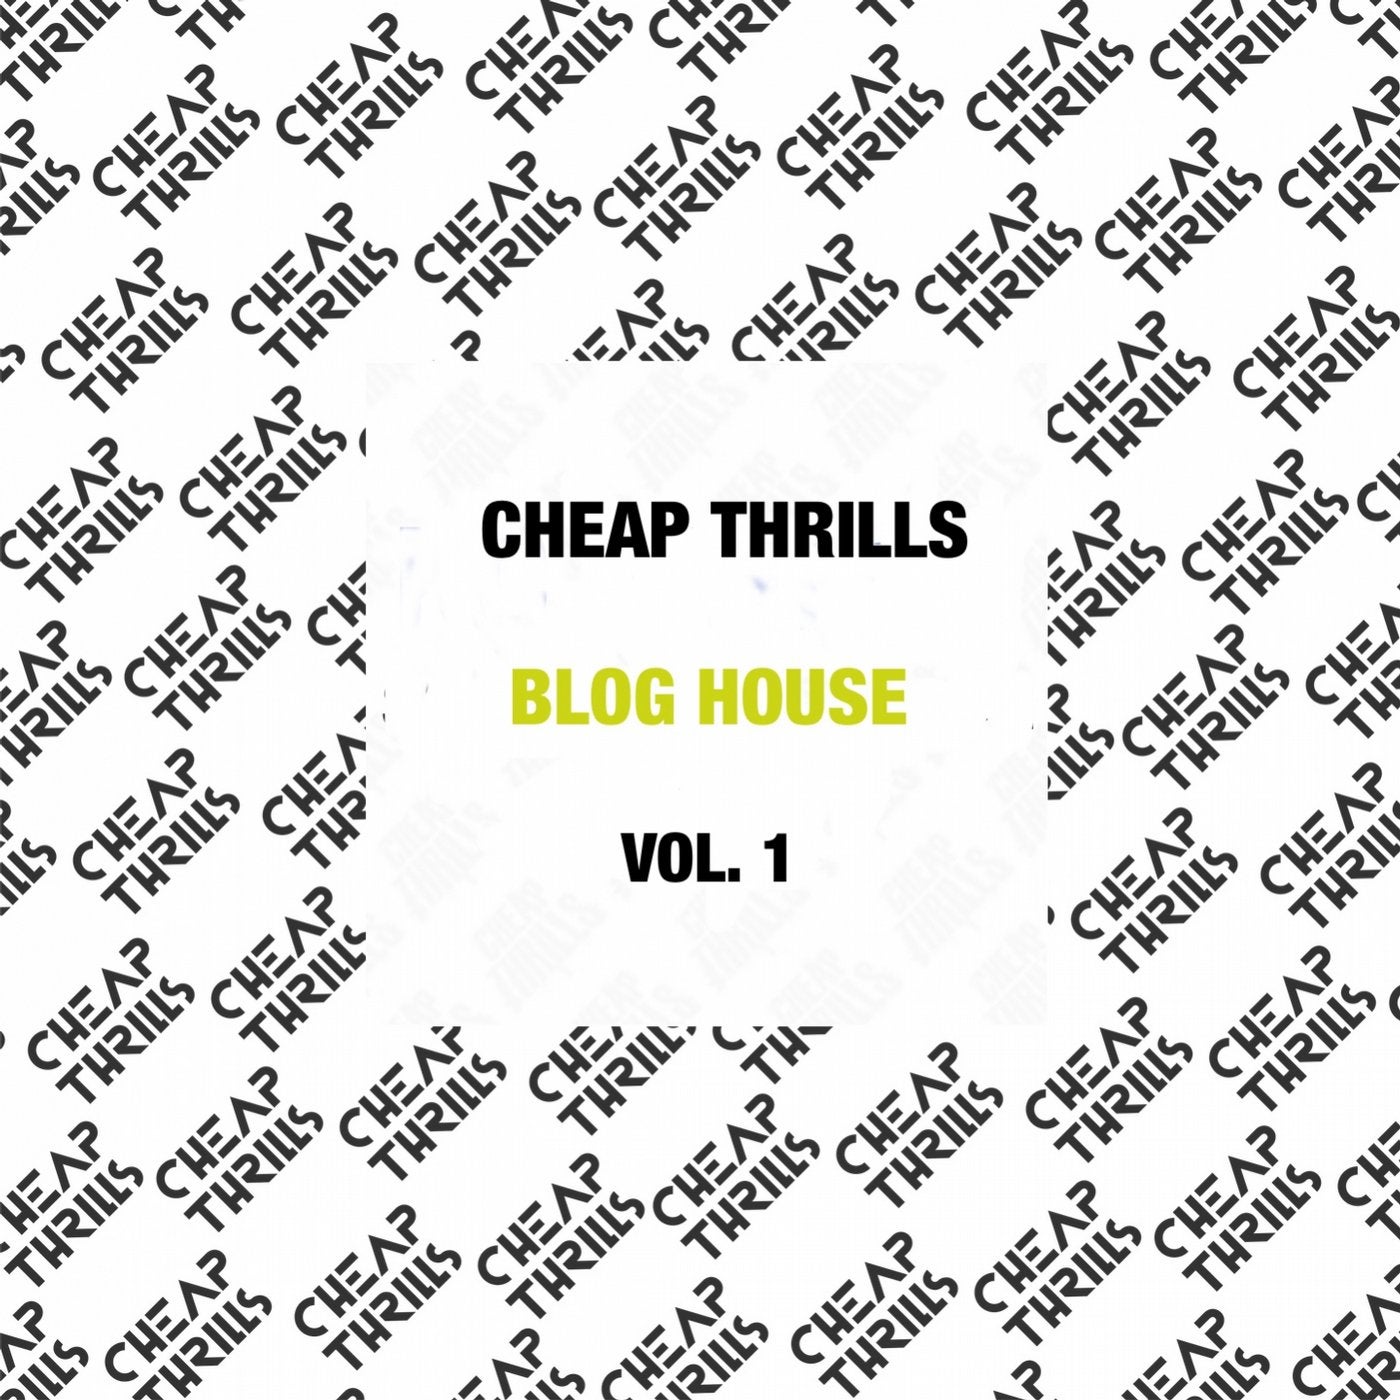 Blog House (Vol. 1)